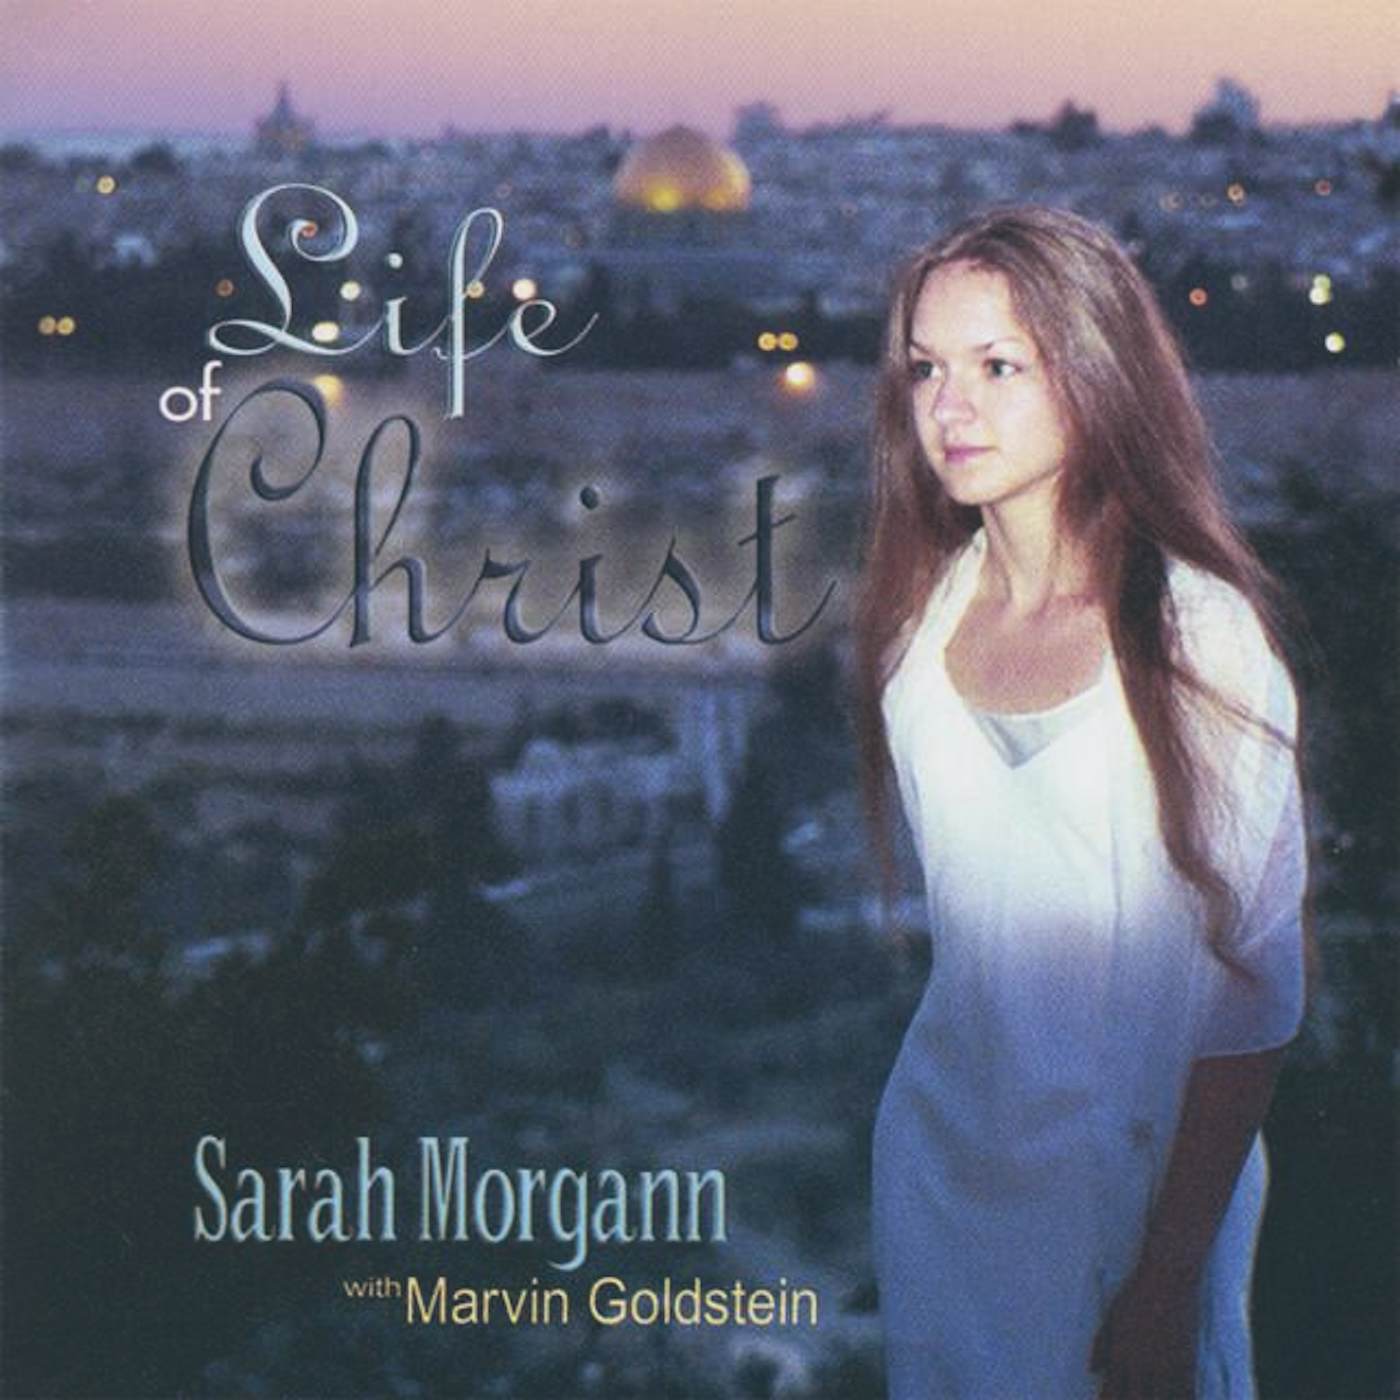 Sarah Morgann